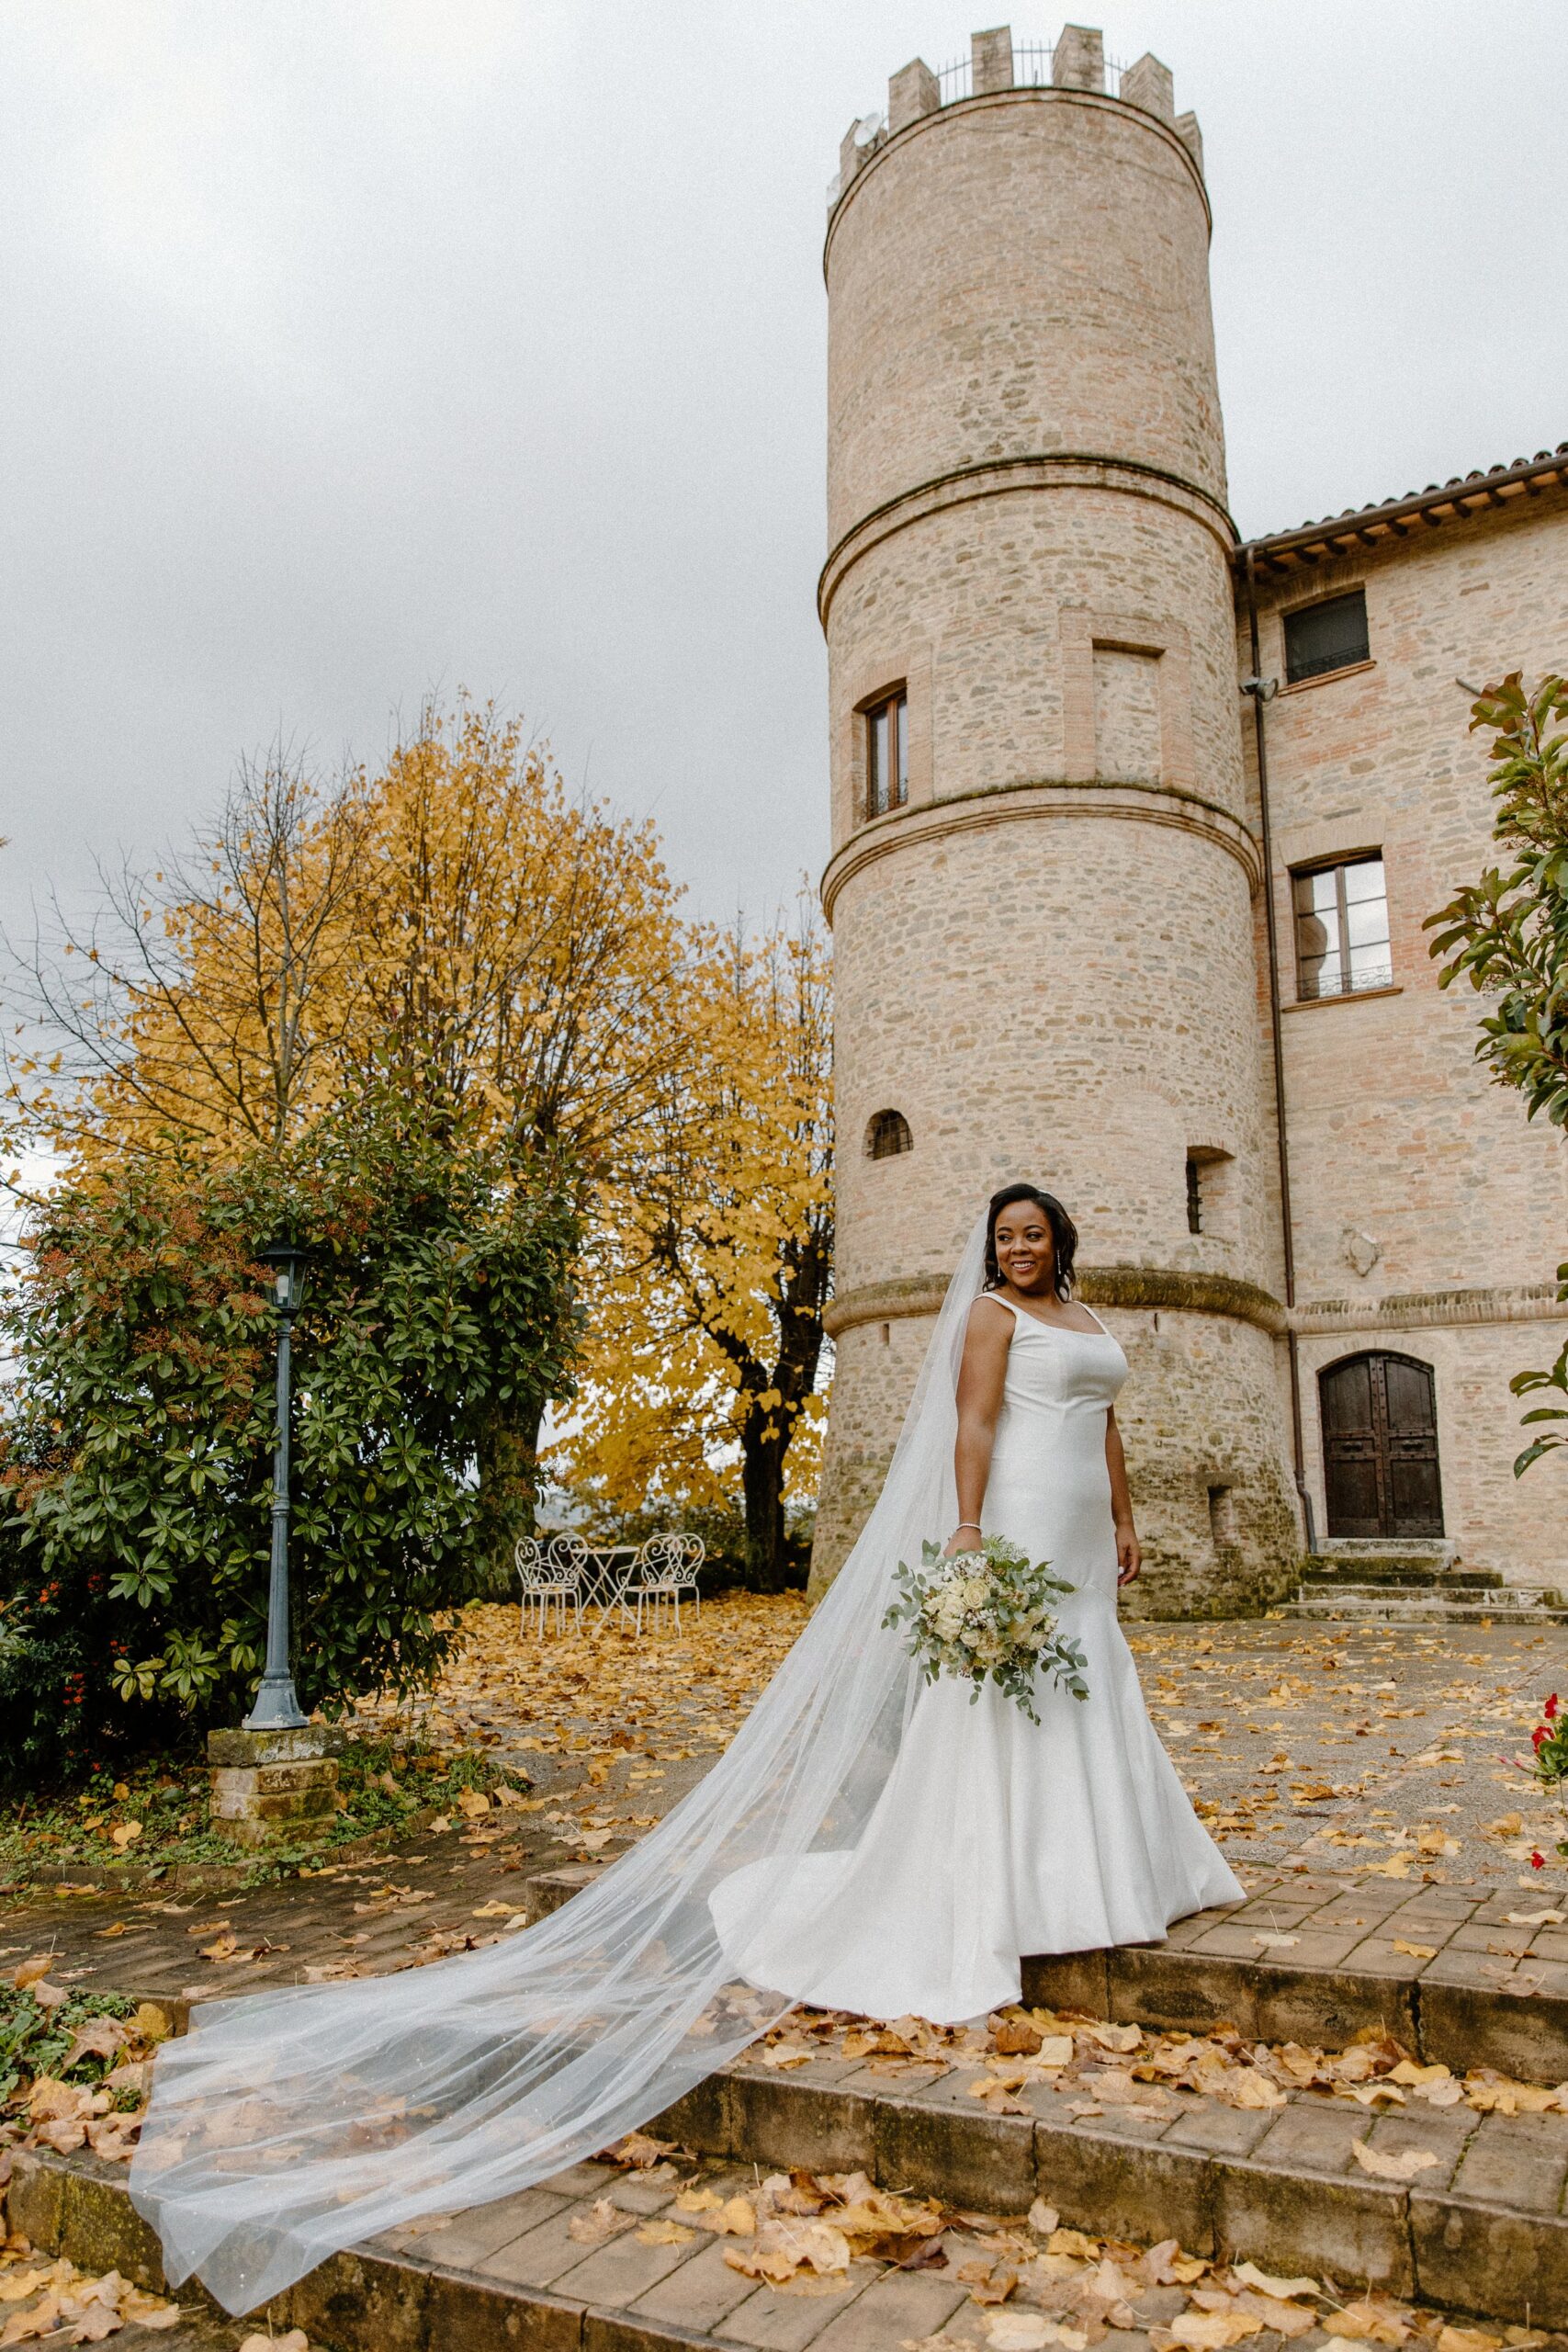 Bride at Castello di Baccaresca in Italy